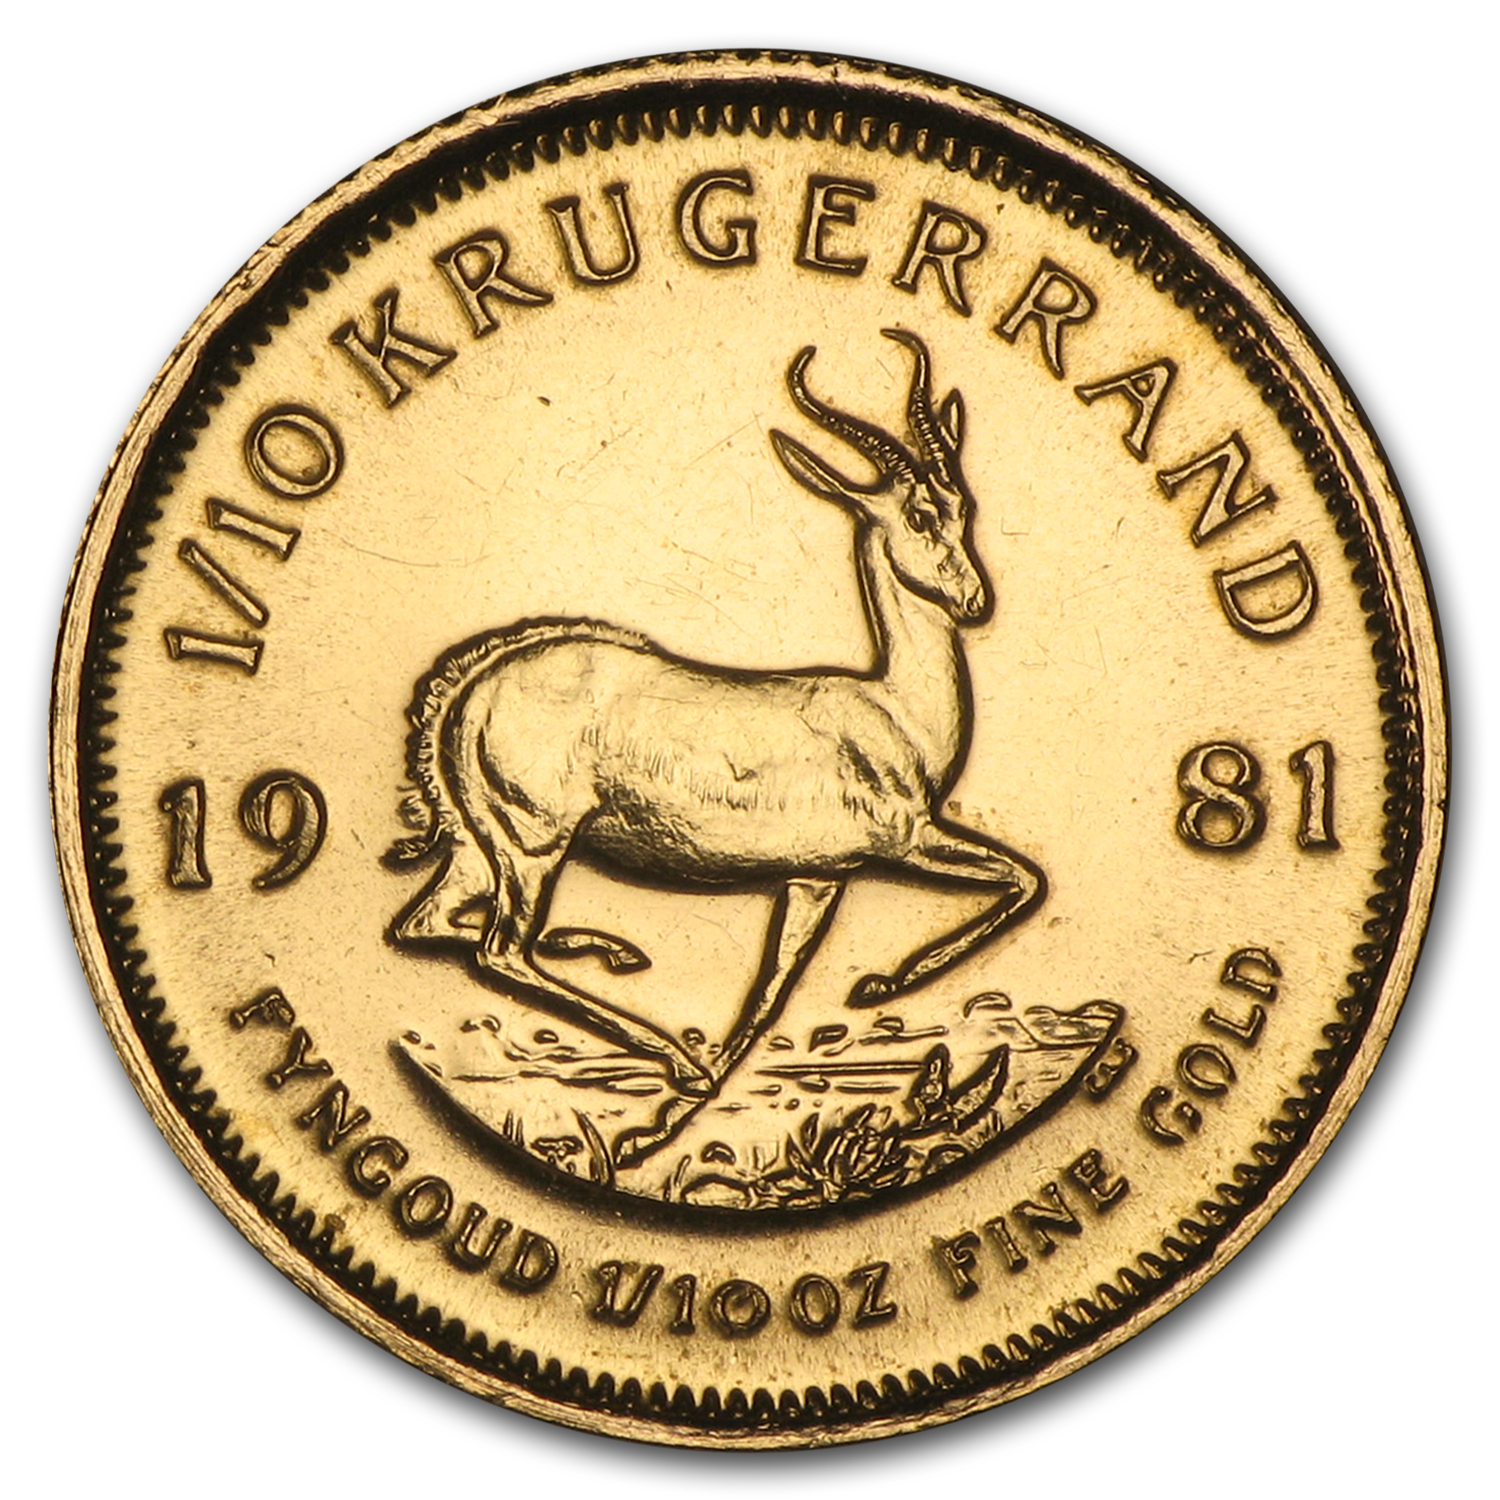 Buy 1981 South Africa 1/10 oz Gold Krugerrand